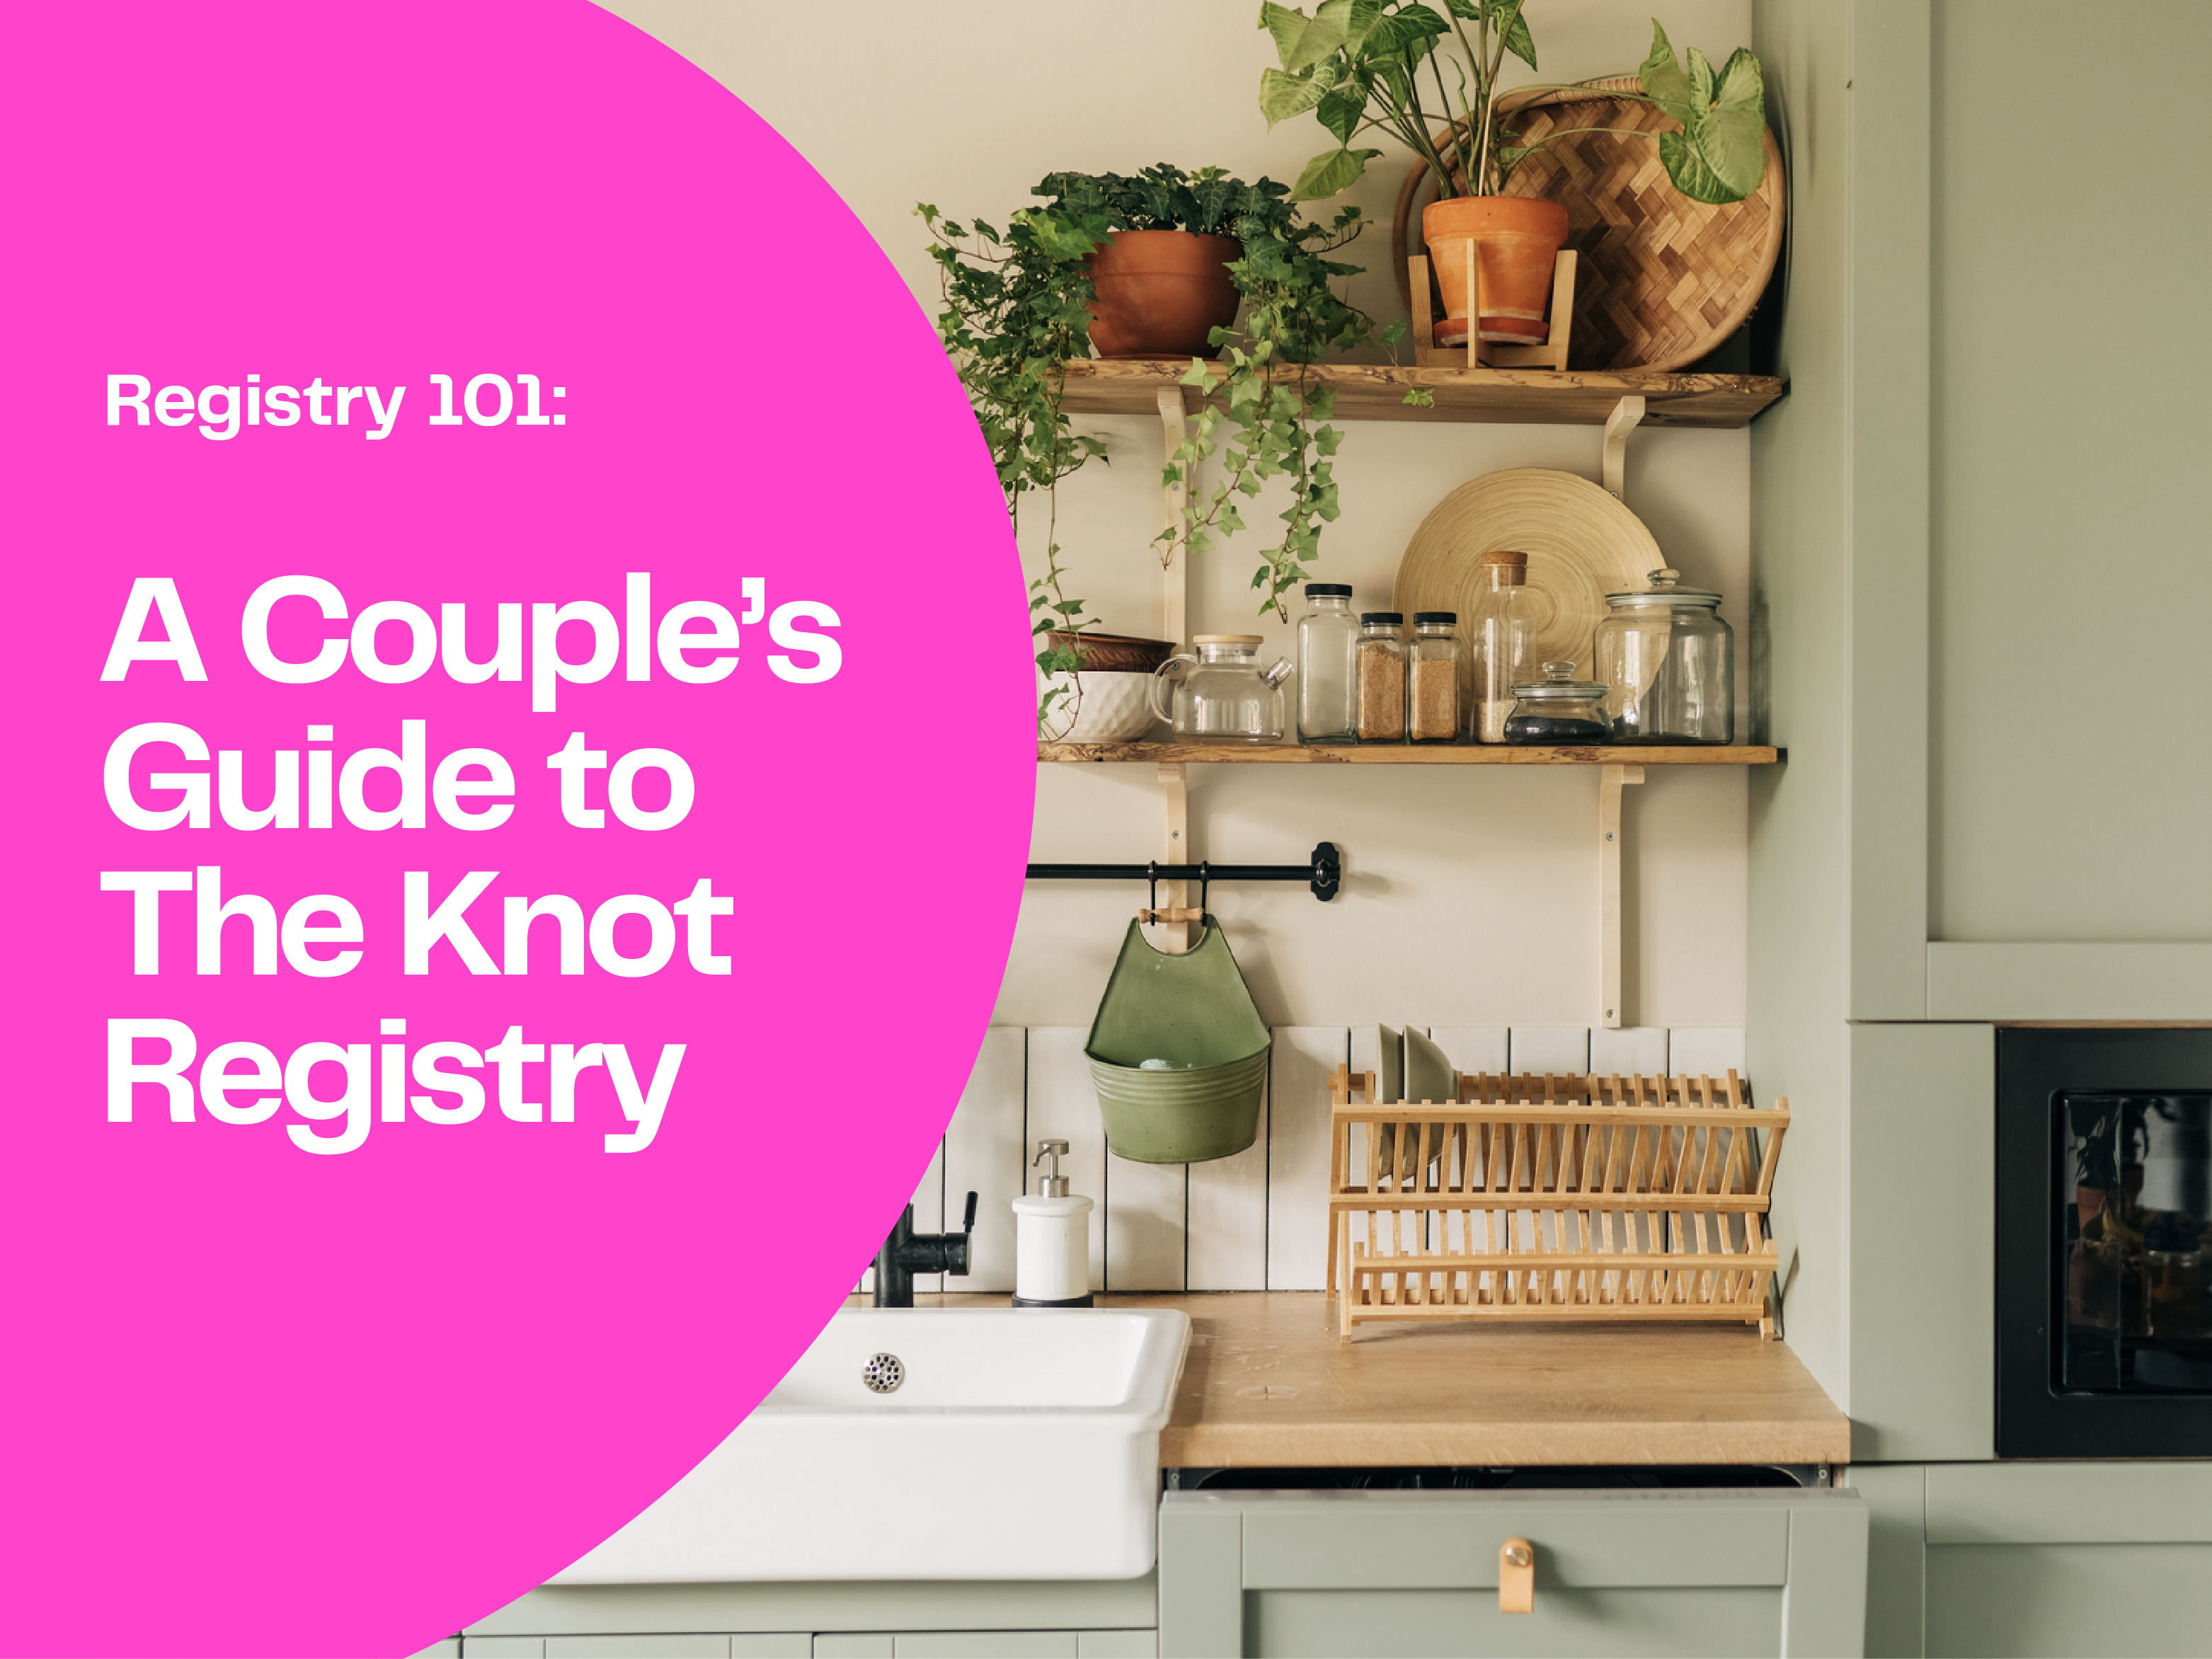 The Wedding Registry  Top 10 Kitchen Must Haves - Kitchen Confidante®